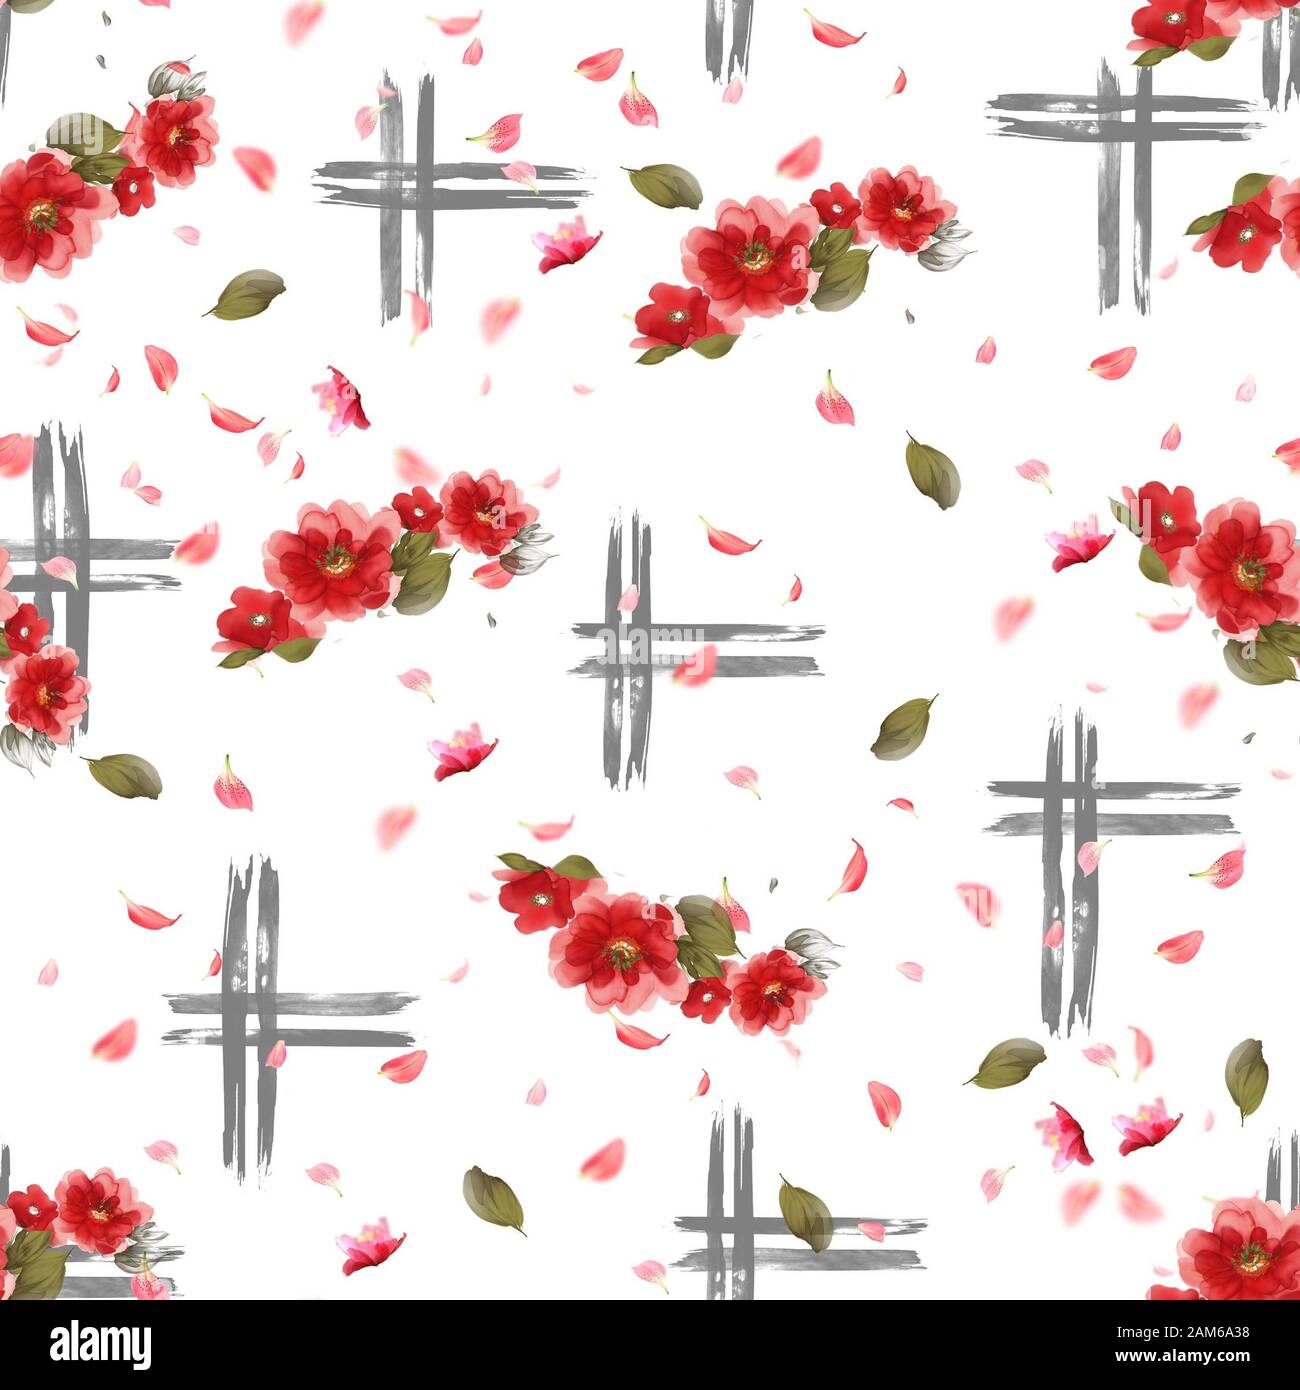 Fleurs aquarelle rouge avec des traits géométriques sur fond blanc. Les feuilles. - Illustration Banque D'Images